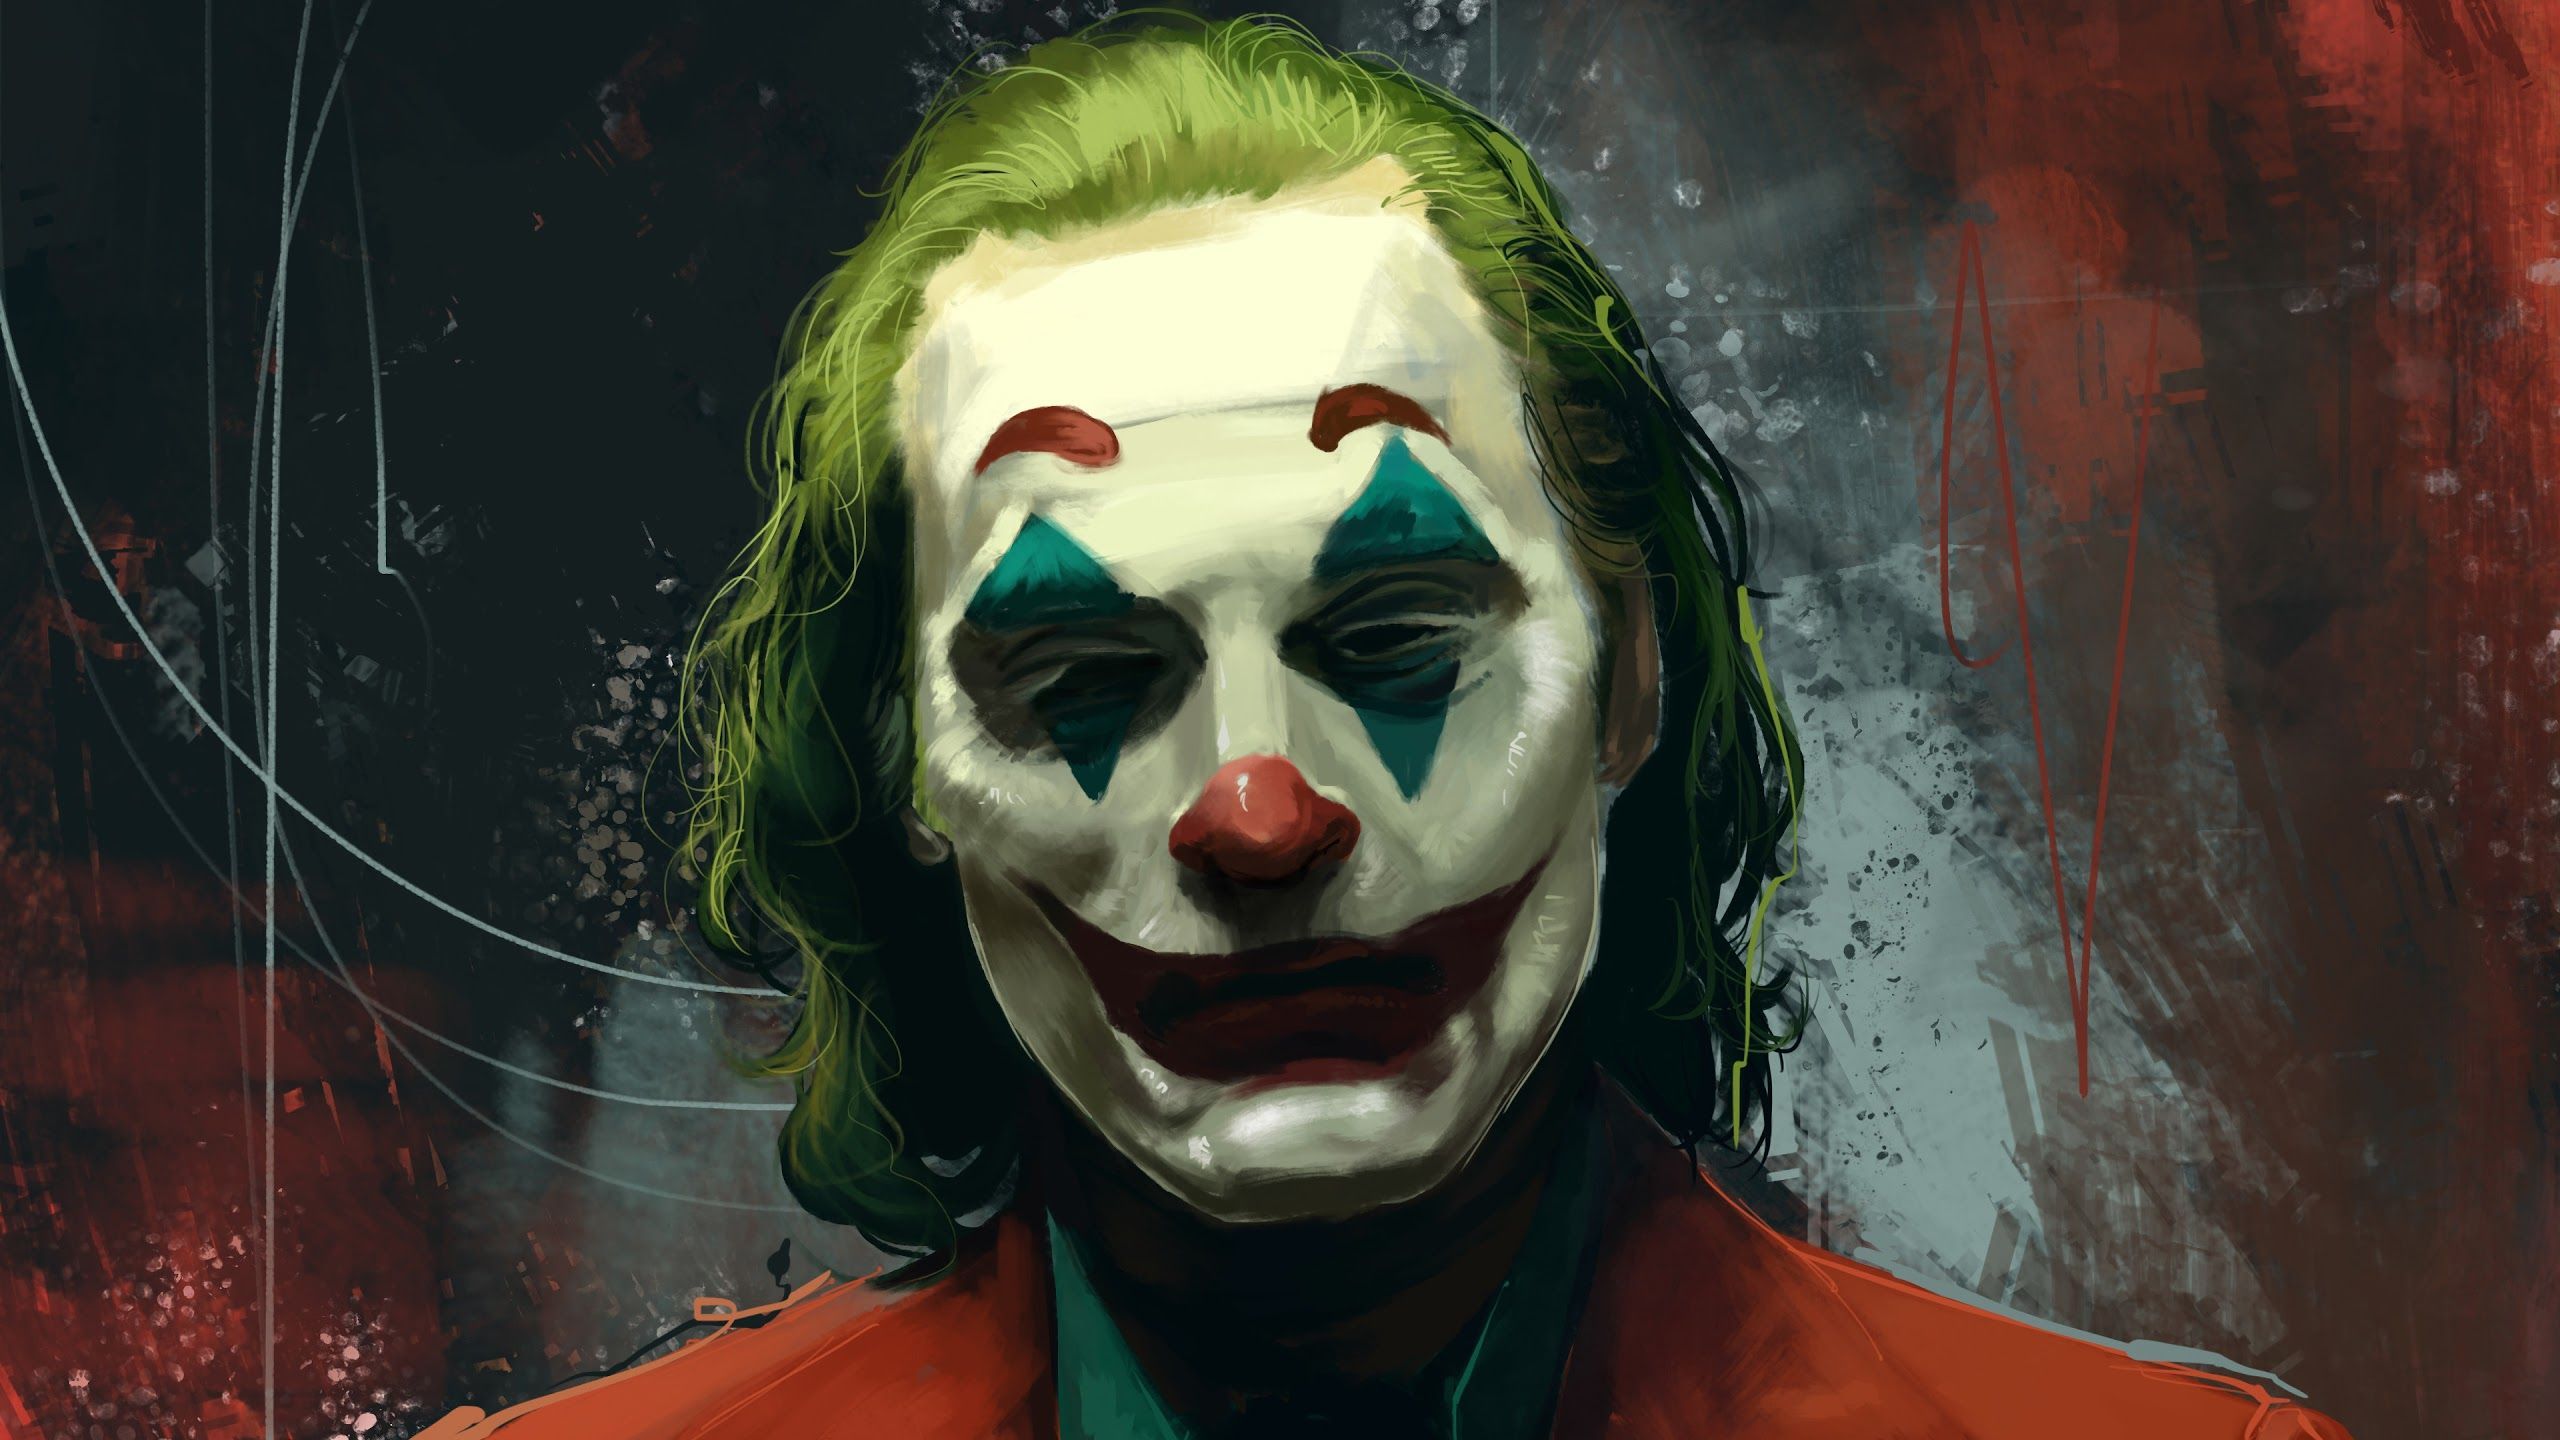 Ideas For Desktop Pc Joker Wallpaper 4k 2019 picture in 2020